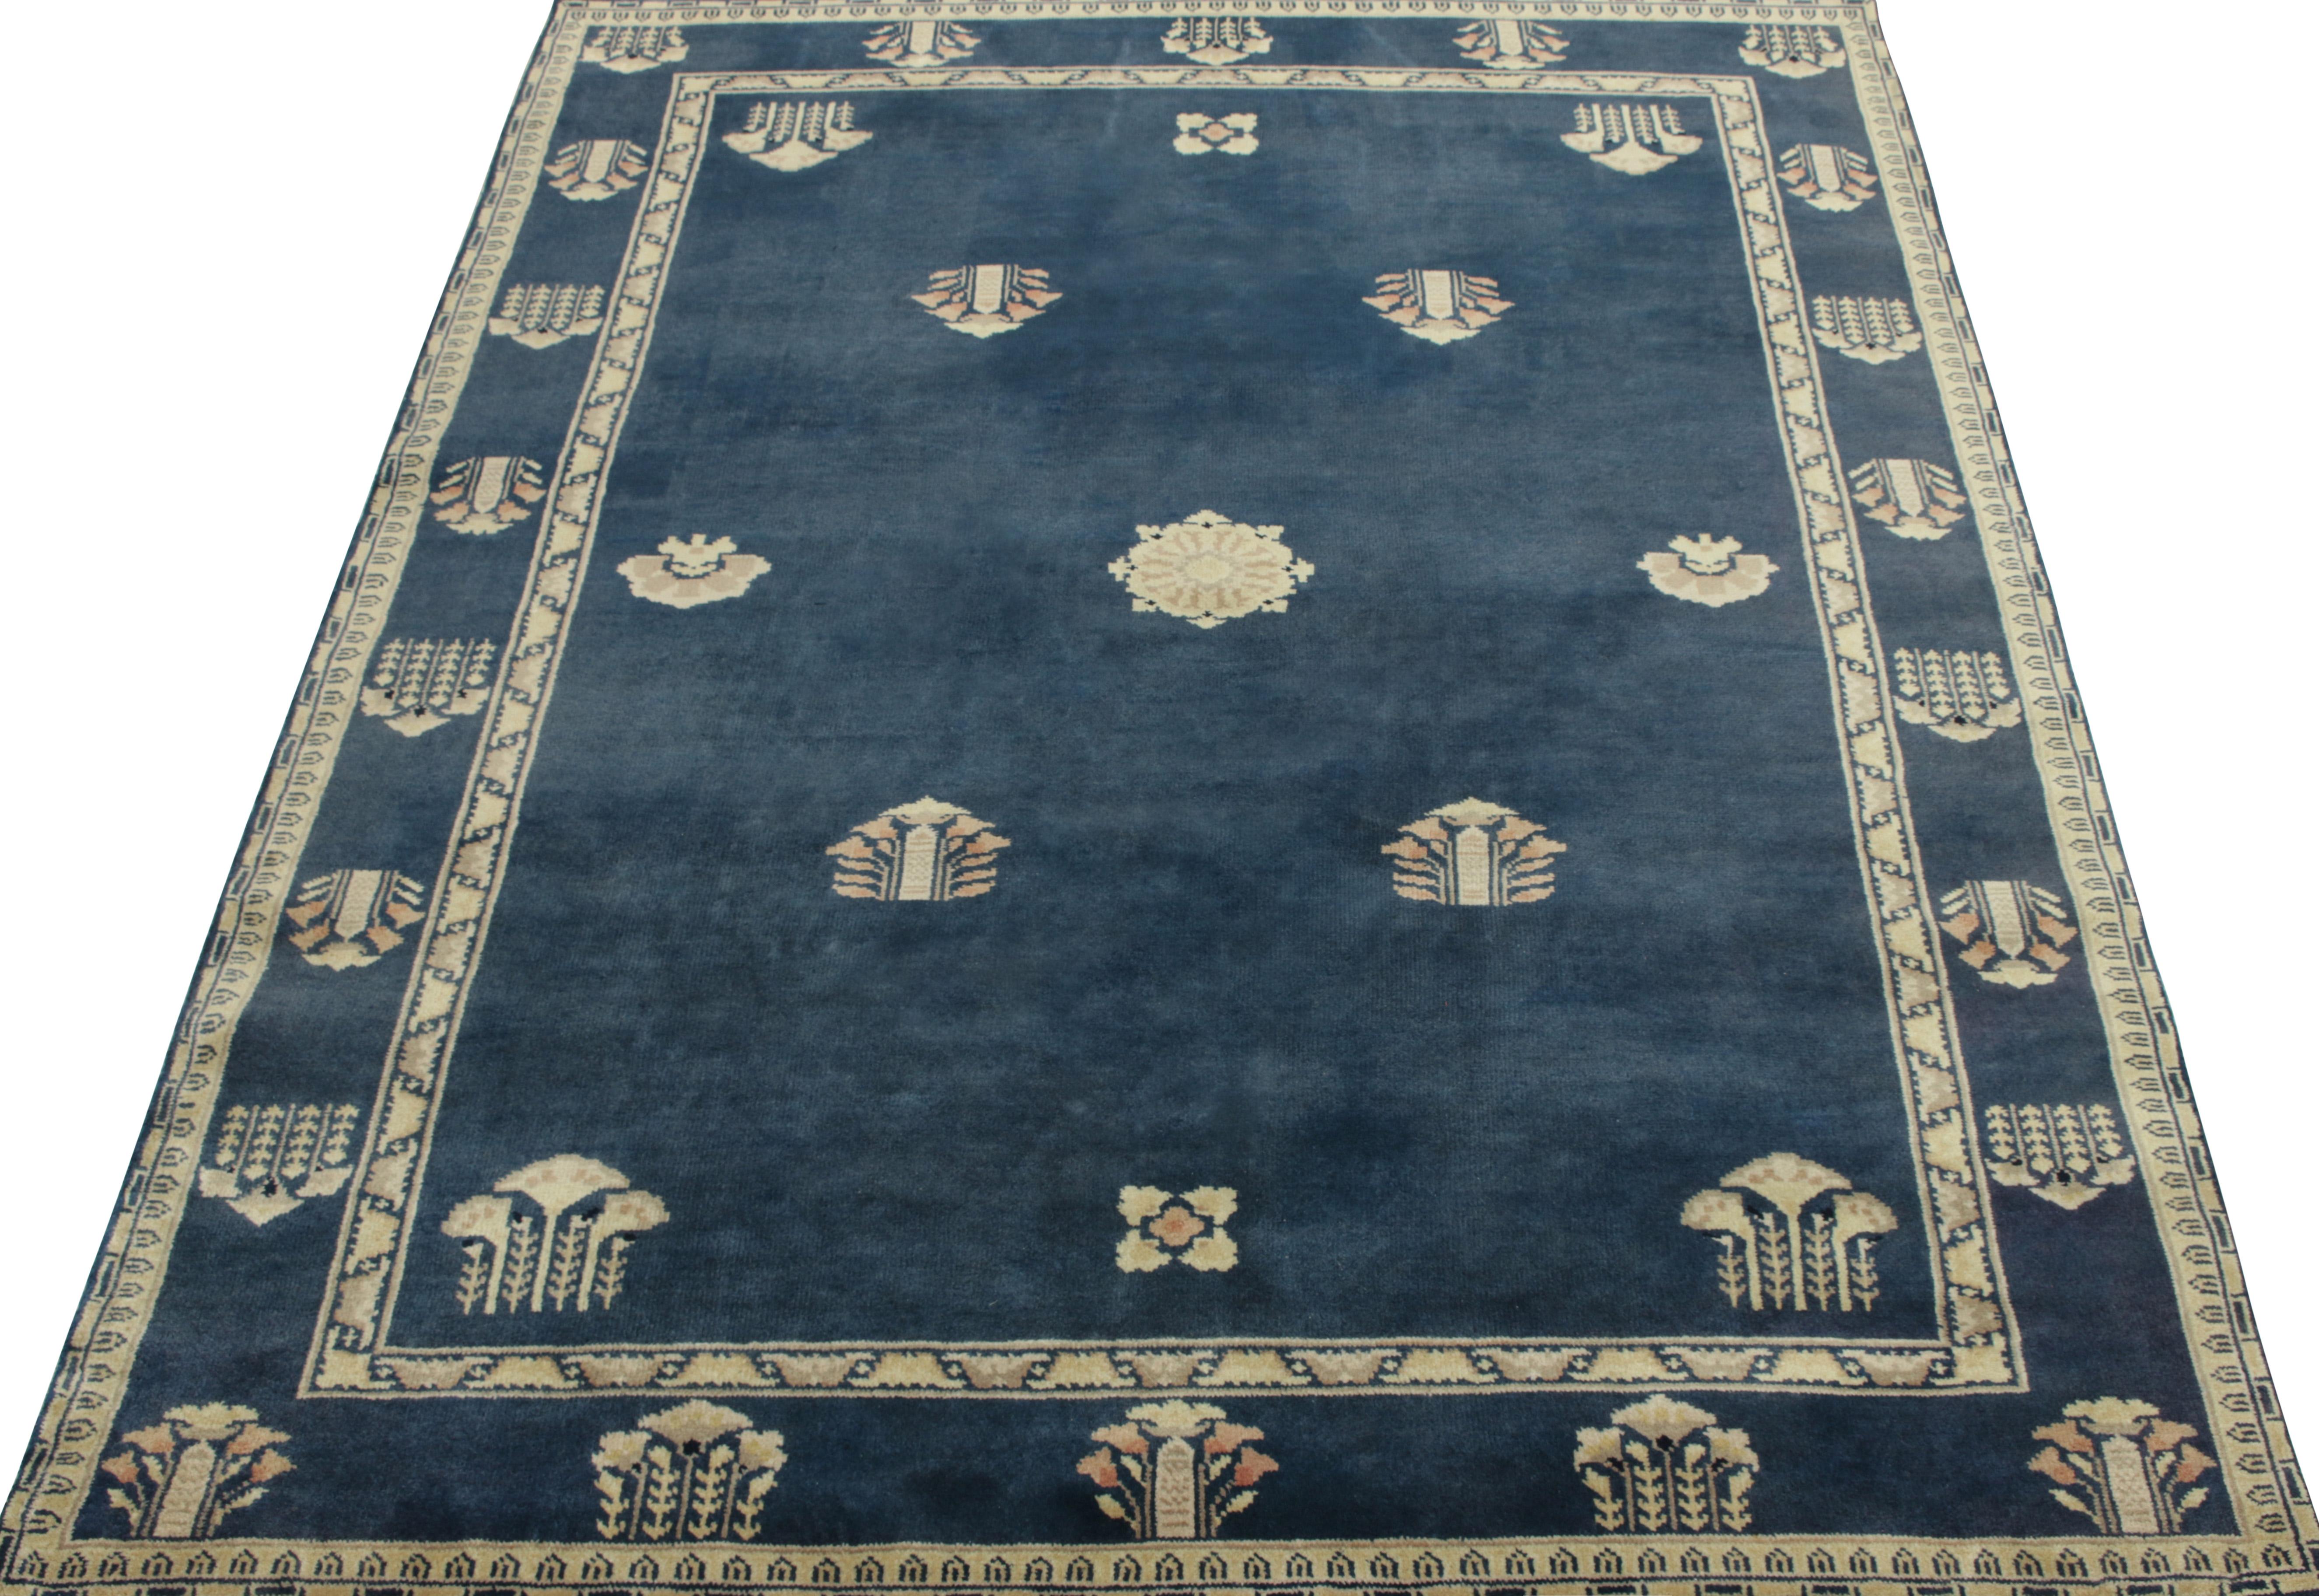 Ein 5 x 7 großer Vintage-Teppich, der die Sensibilität des chinesischen Dekos veranschaulicht, mit komplizierten Blumenmustern auf Feld und Bordüre in Creme-, Hellrot- und Grautönen auf einem üppigen blauen Hintergrund, der zu einem verlockenden